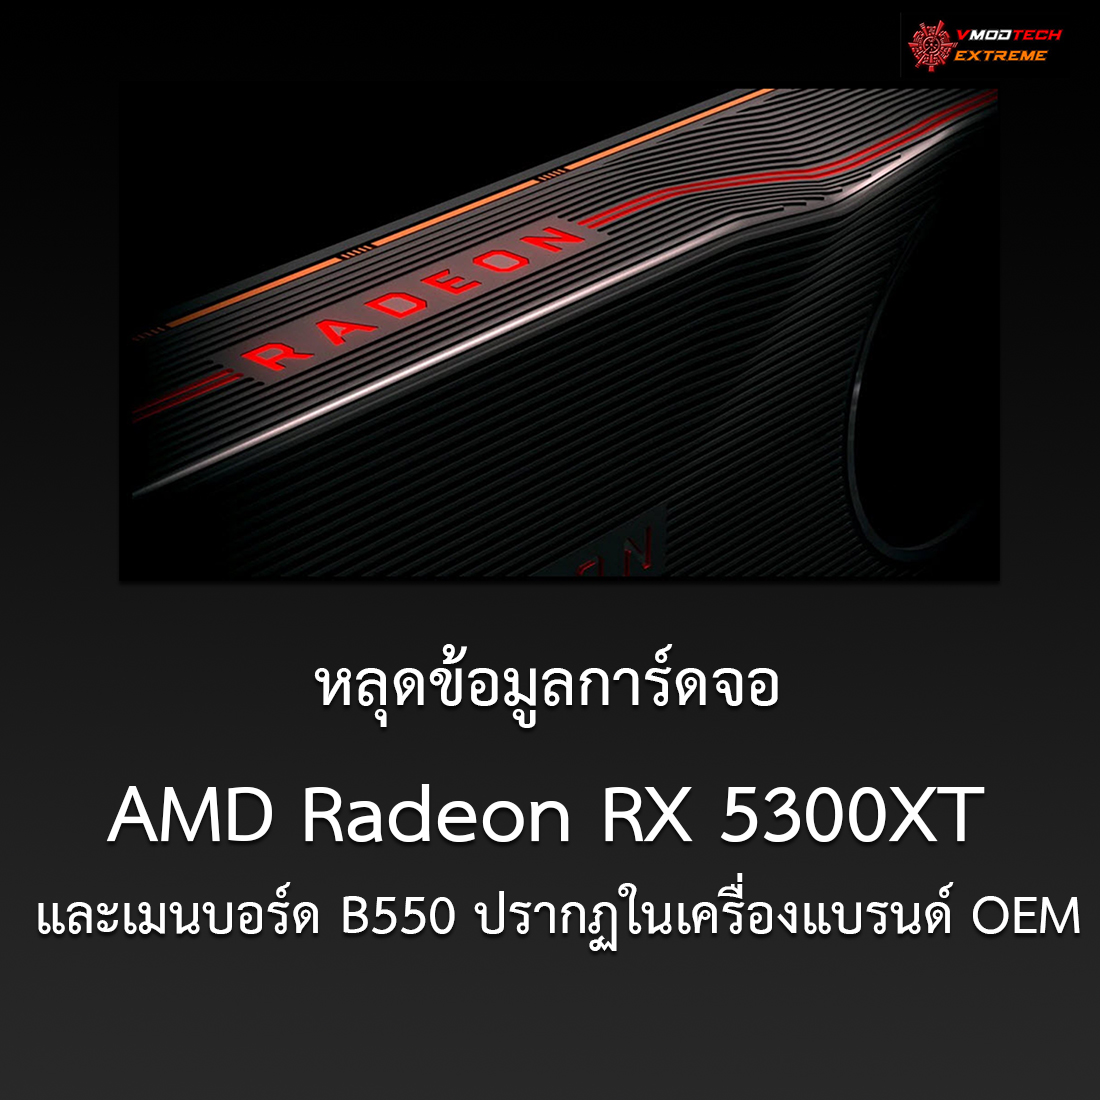 หลุดข้อมูลการ์ดจอ AMD Radeon RX 5300XT 4GB GDDR5 และเมนบอร์ด B550 ปรากฏในเครื่องแบรนด์ OEM